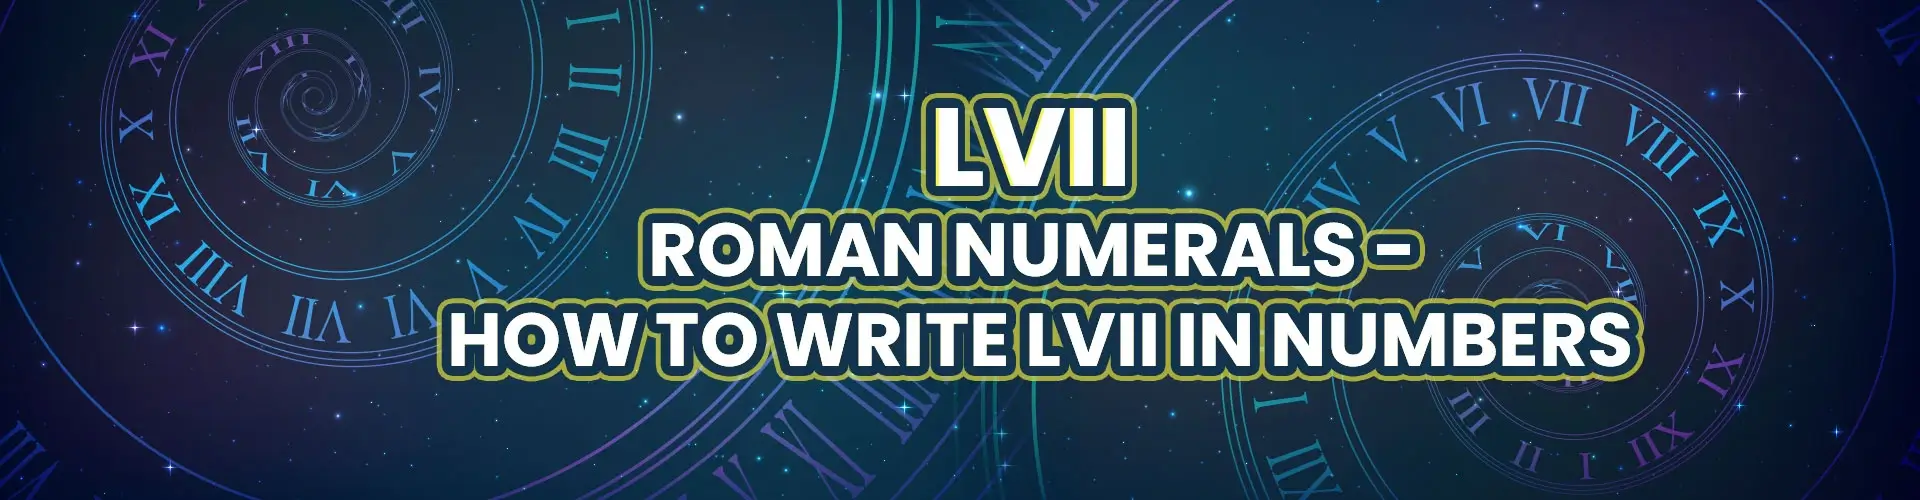 LVII Roman Numerals